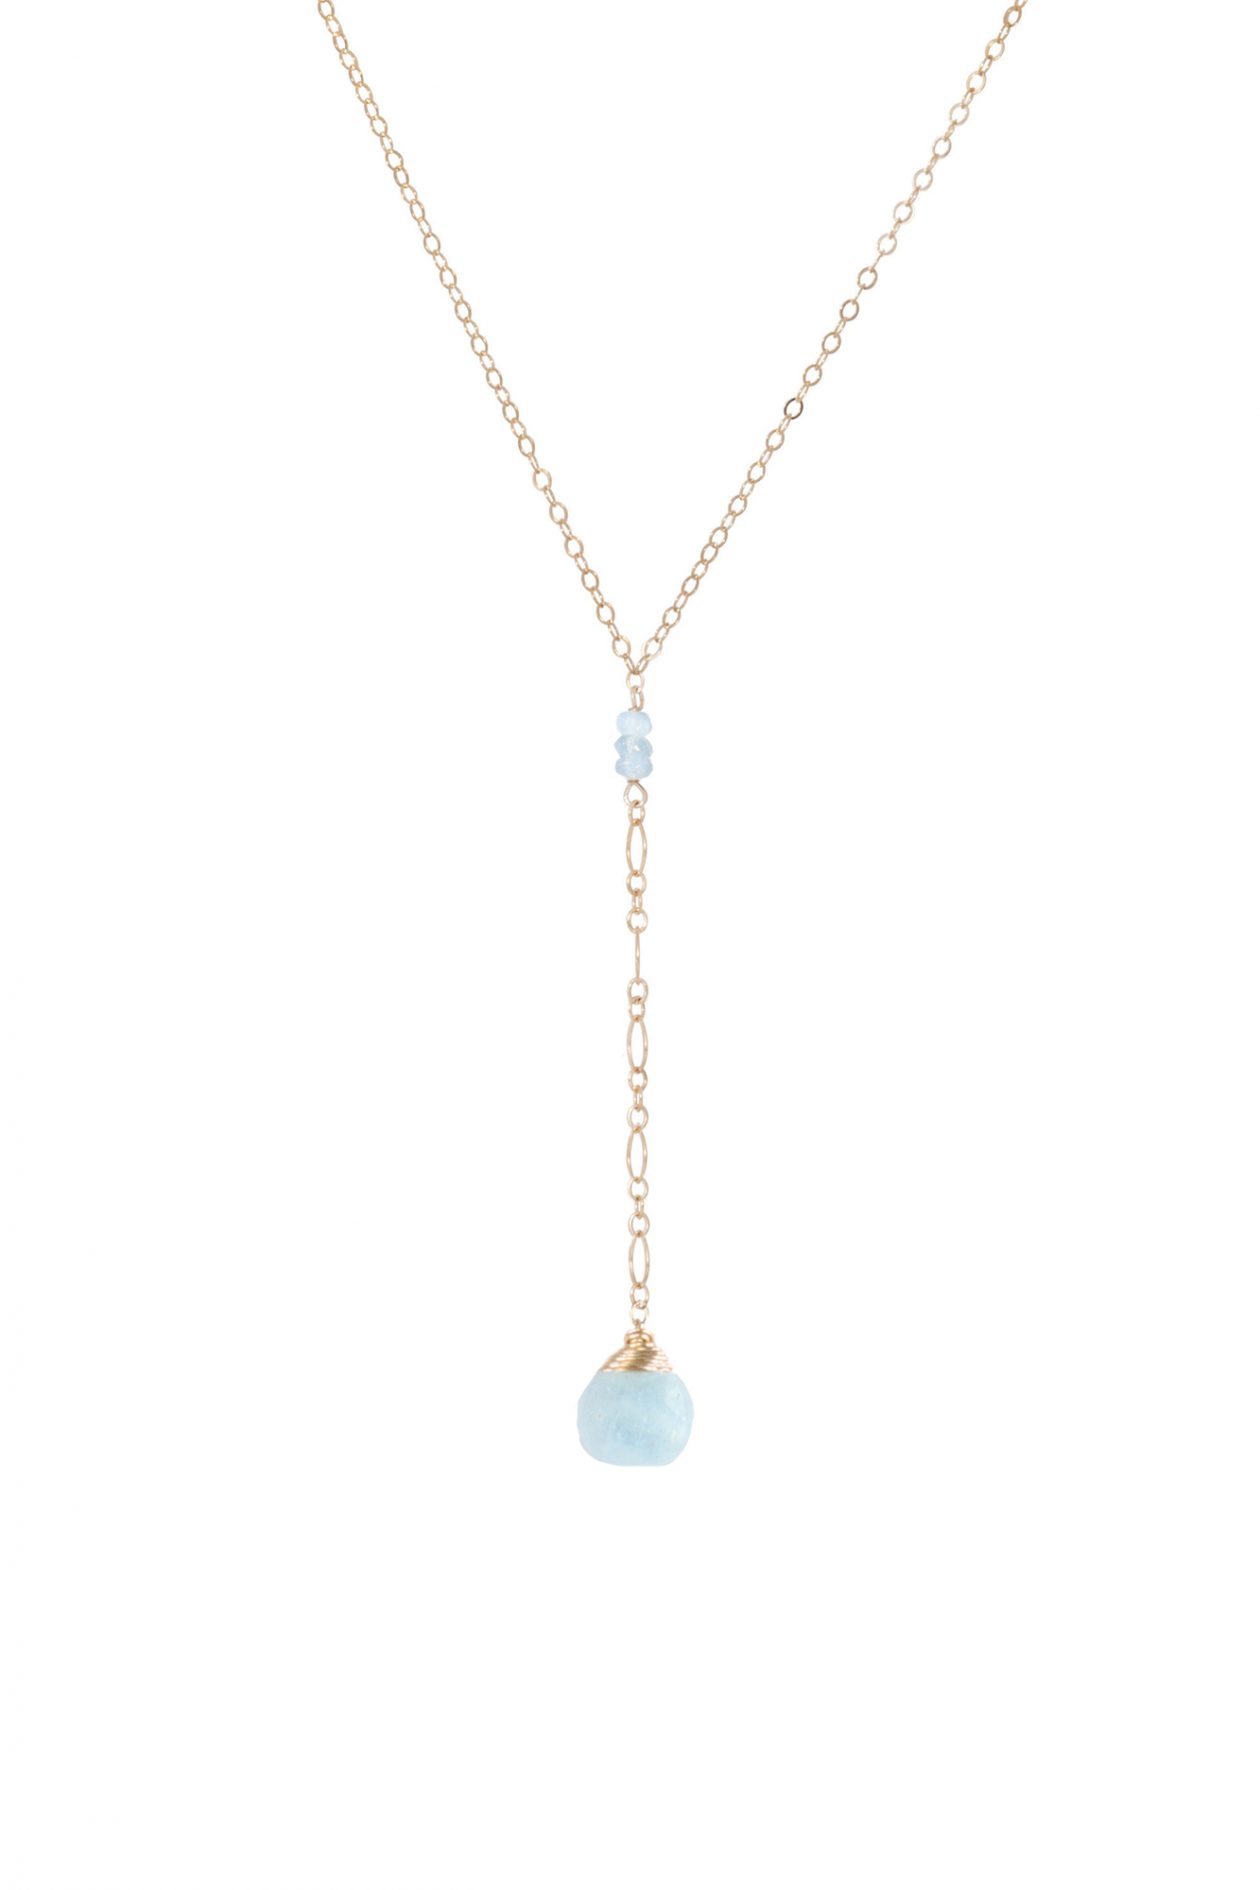 JK Designs "Y" Drop Necklace in Moss Aquamarine